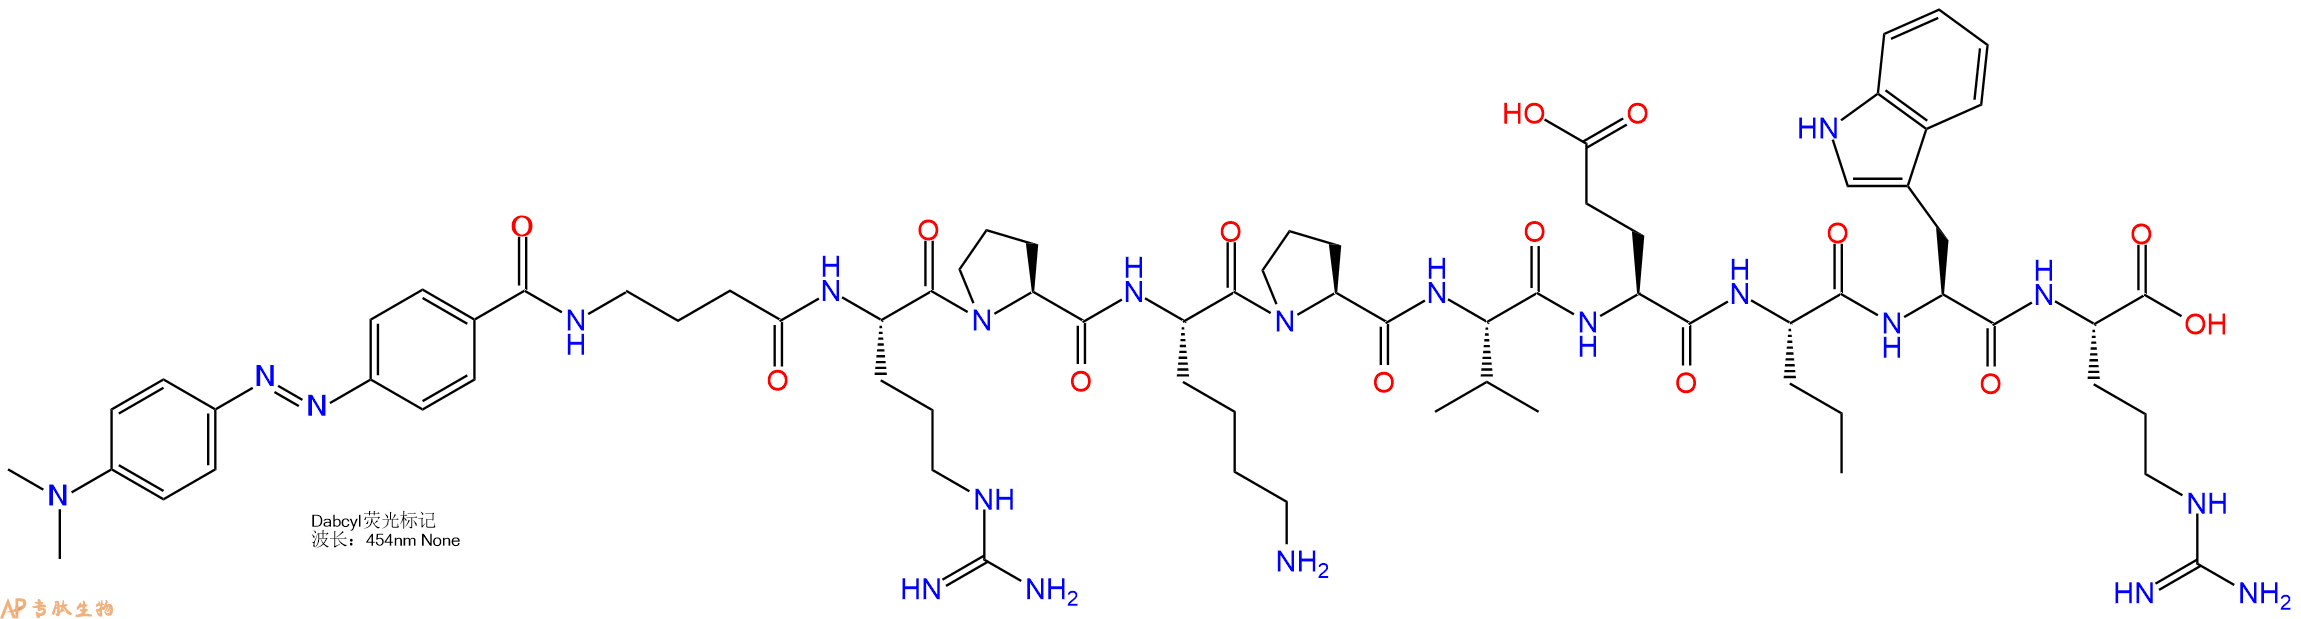 专肽生物产品十肽Dabcyl-Gaba-RPKPVE-Nva-WR